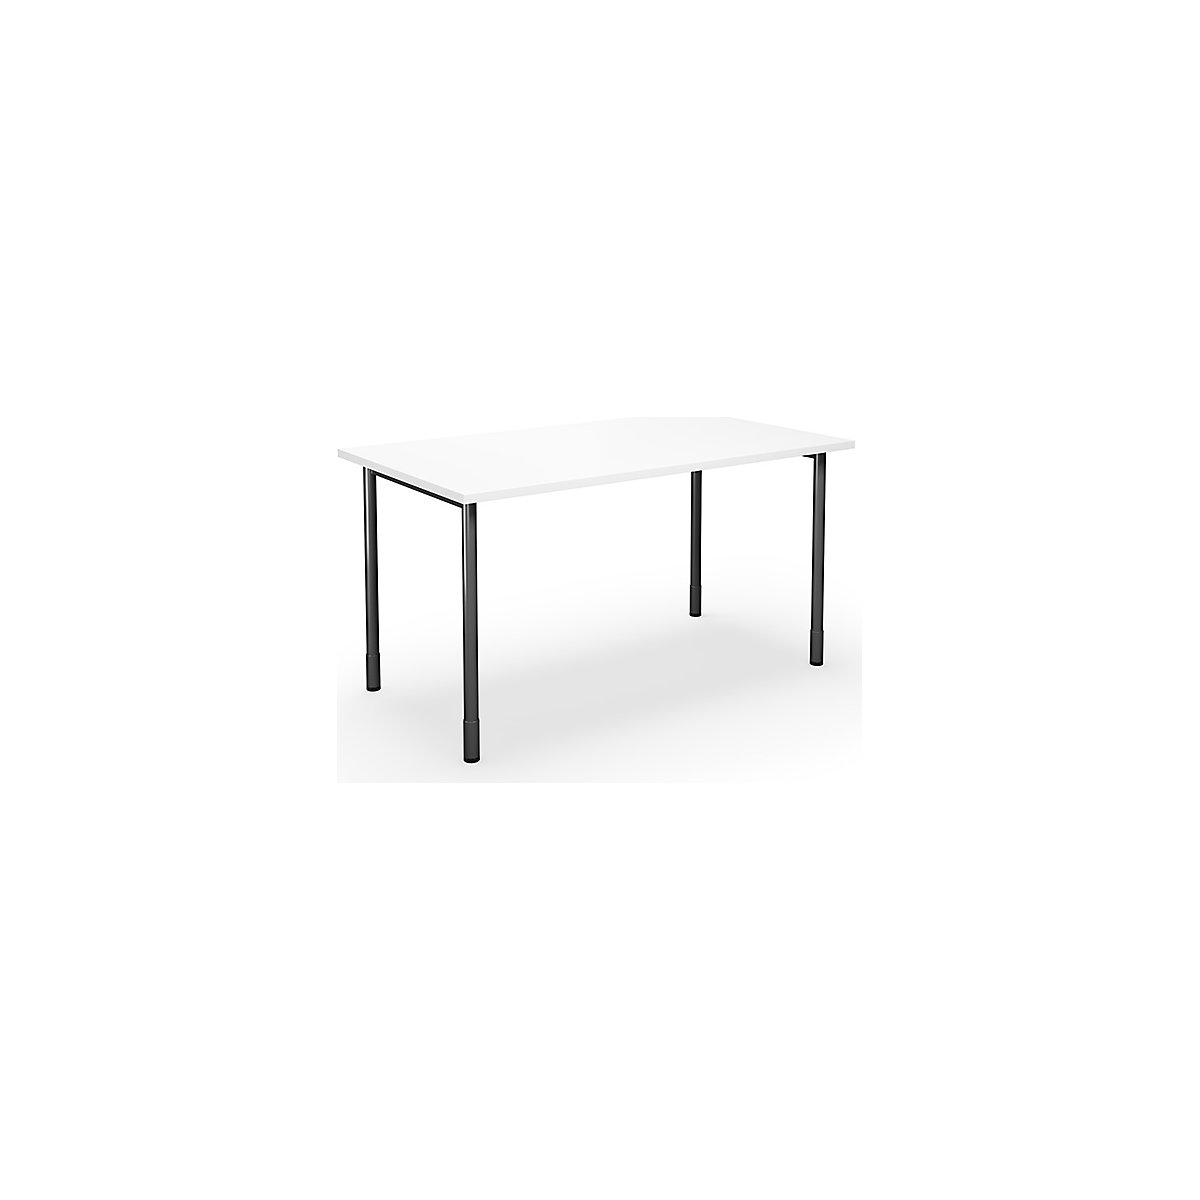 DUO-C multi-purpose desk, straight tabletop, WxD 1200 x 800 mm, white, black-6